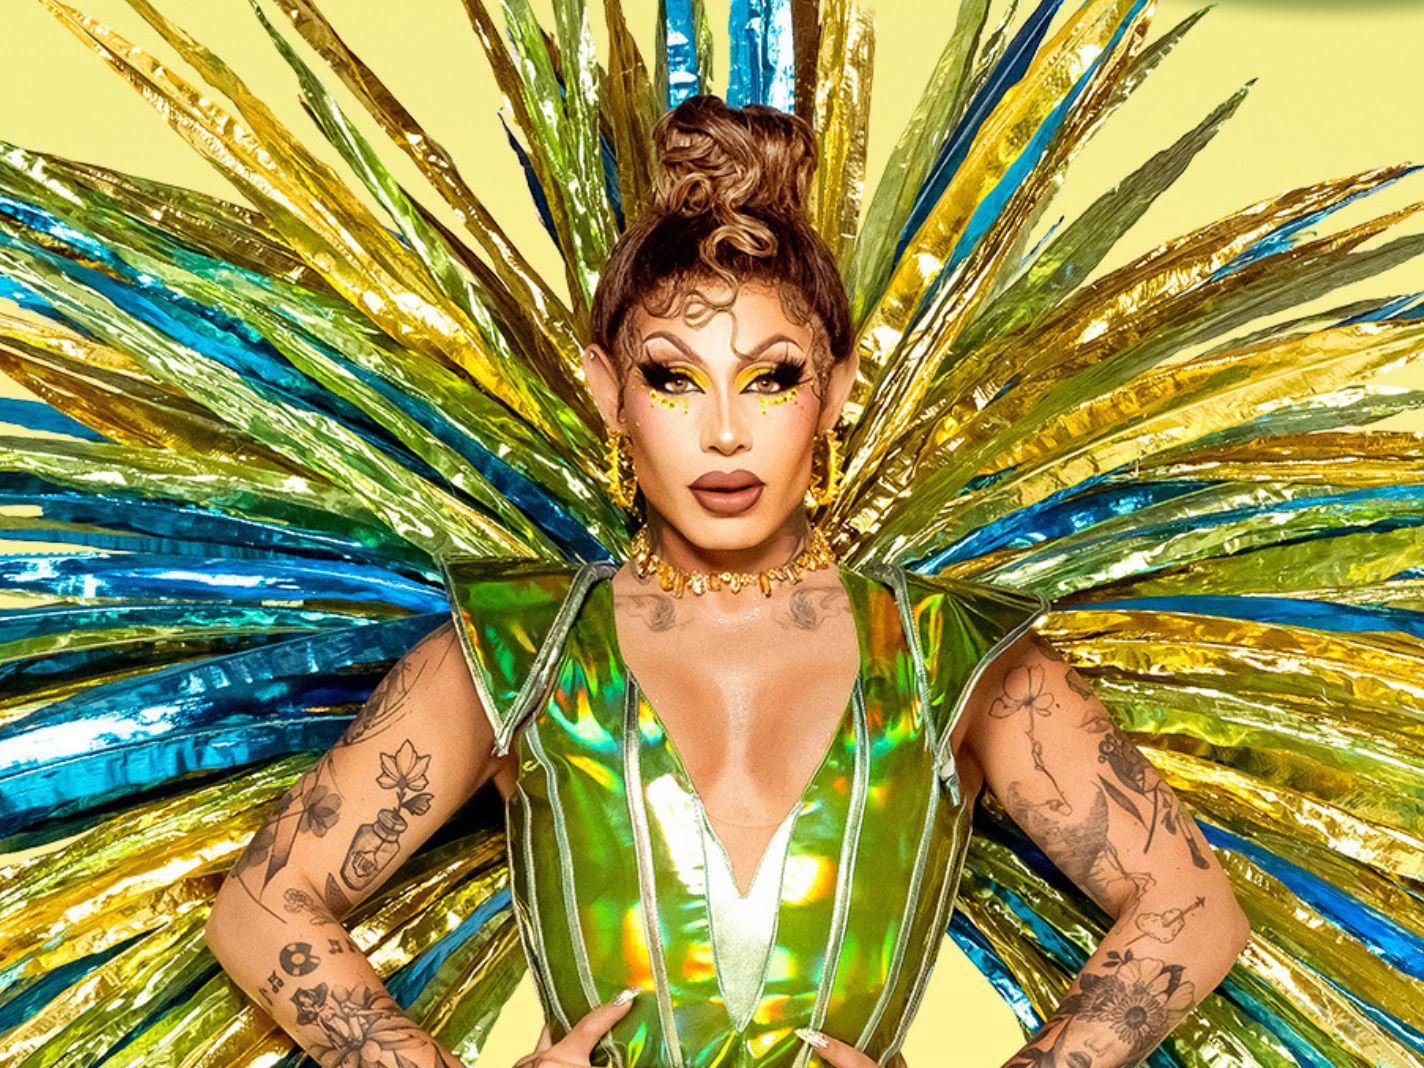 Drag Race Brasil' host announced as Grag Queen